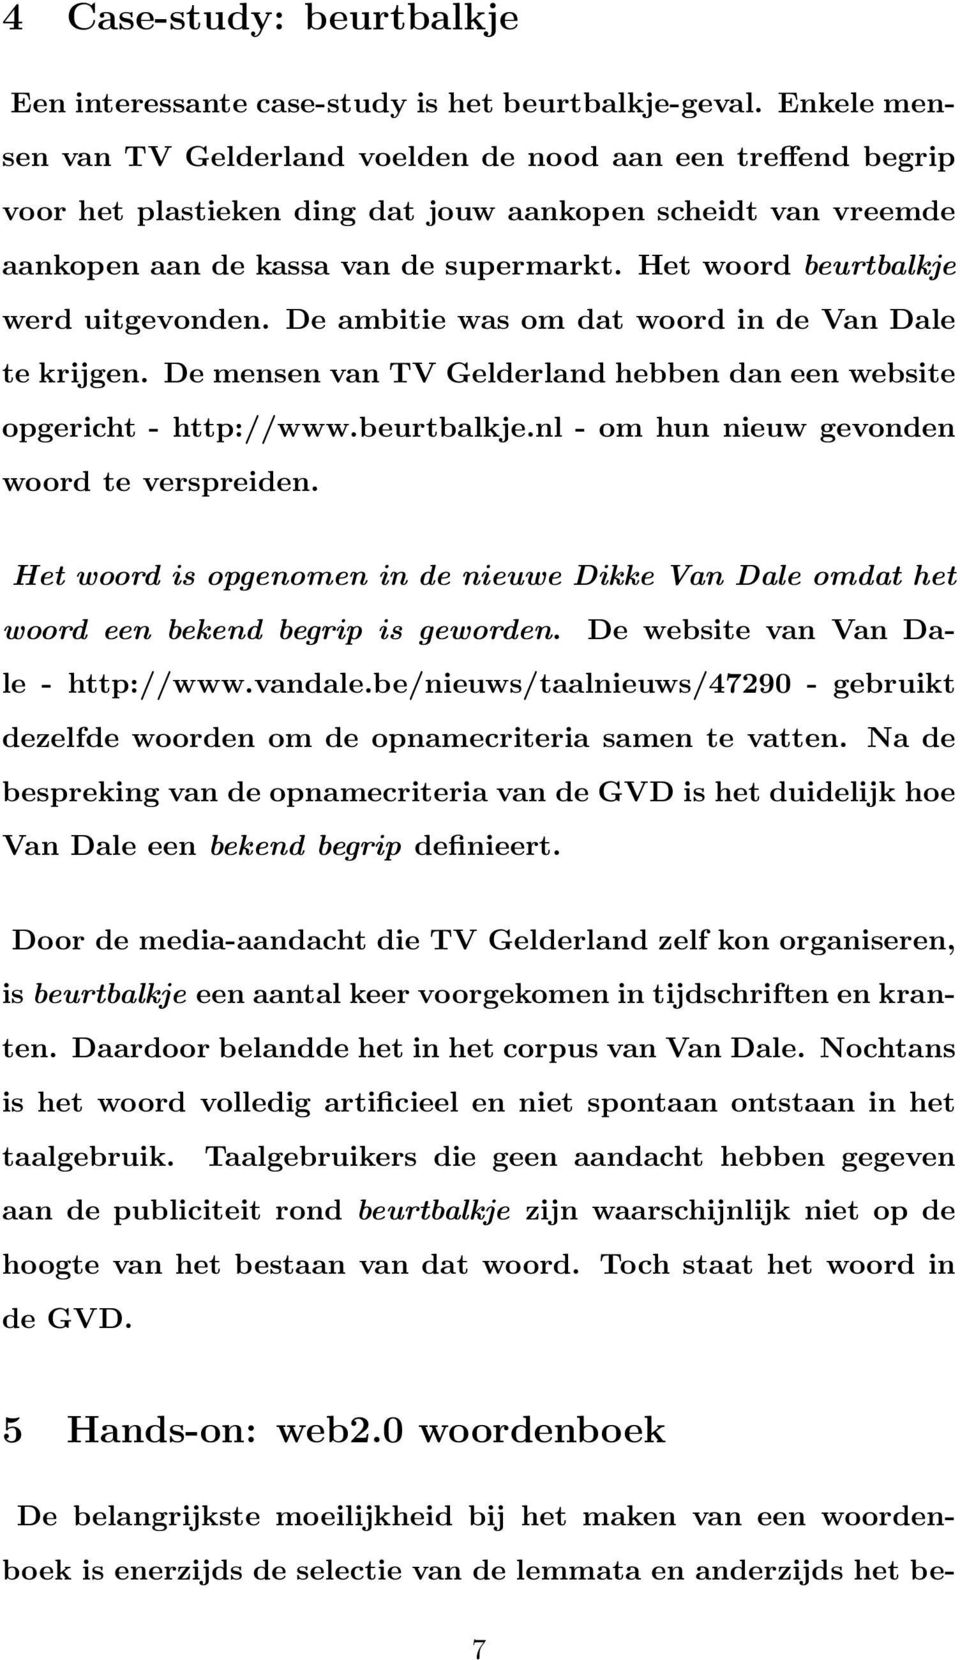 Het woord beurtbalkje werd uitgevonden. De ambitie was om dat woord in de Van Dale te krijgen. De mensen van TV Gelderland hebben dan een website opgericht - http://www.beurtbalkje.nl - om hun nieuw gevonden woord te verspreiden.